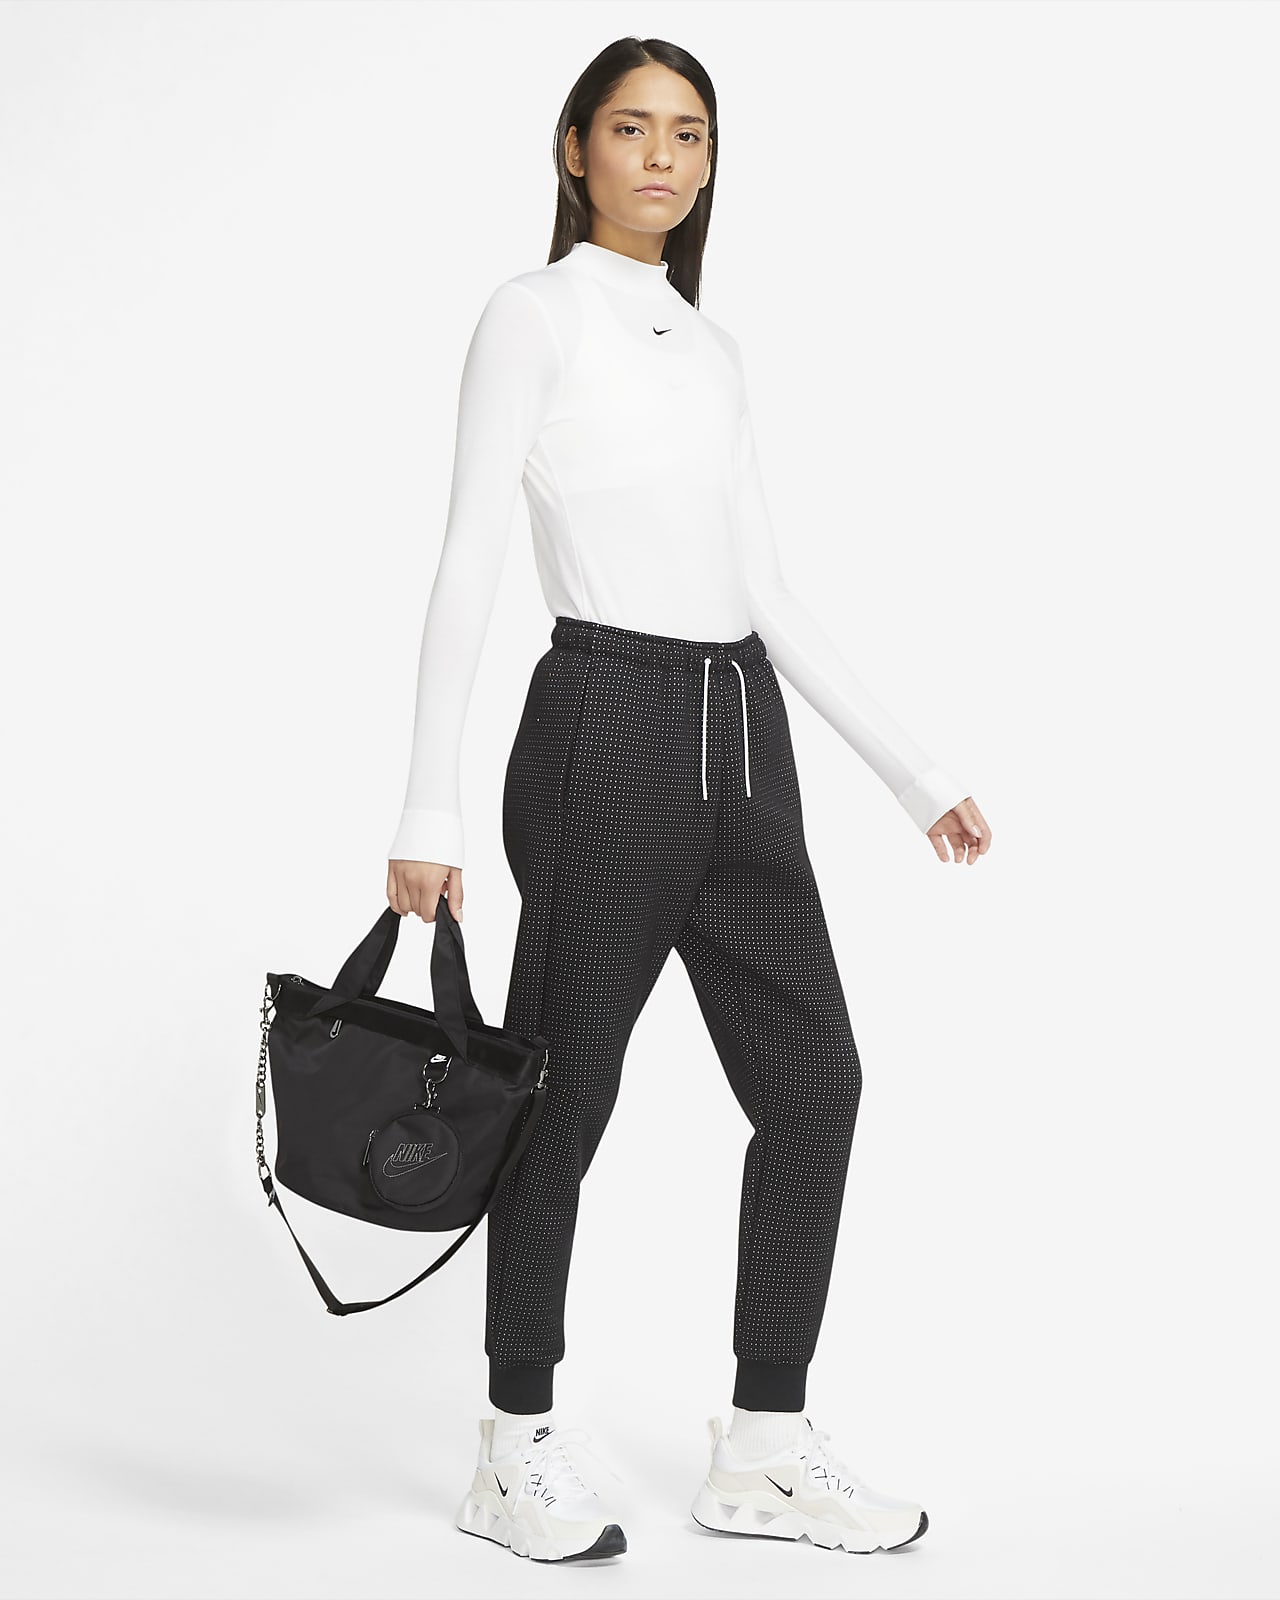 Women's Nike Sportswear Futura Luxe Crossbody Bag